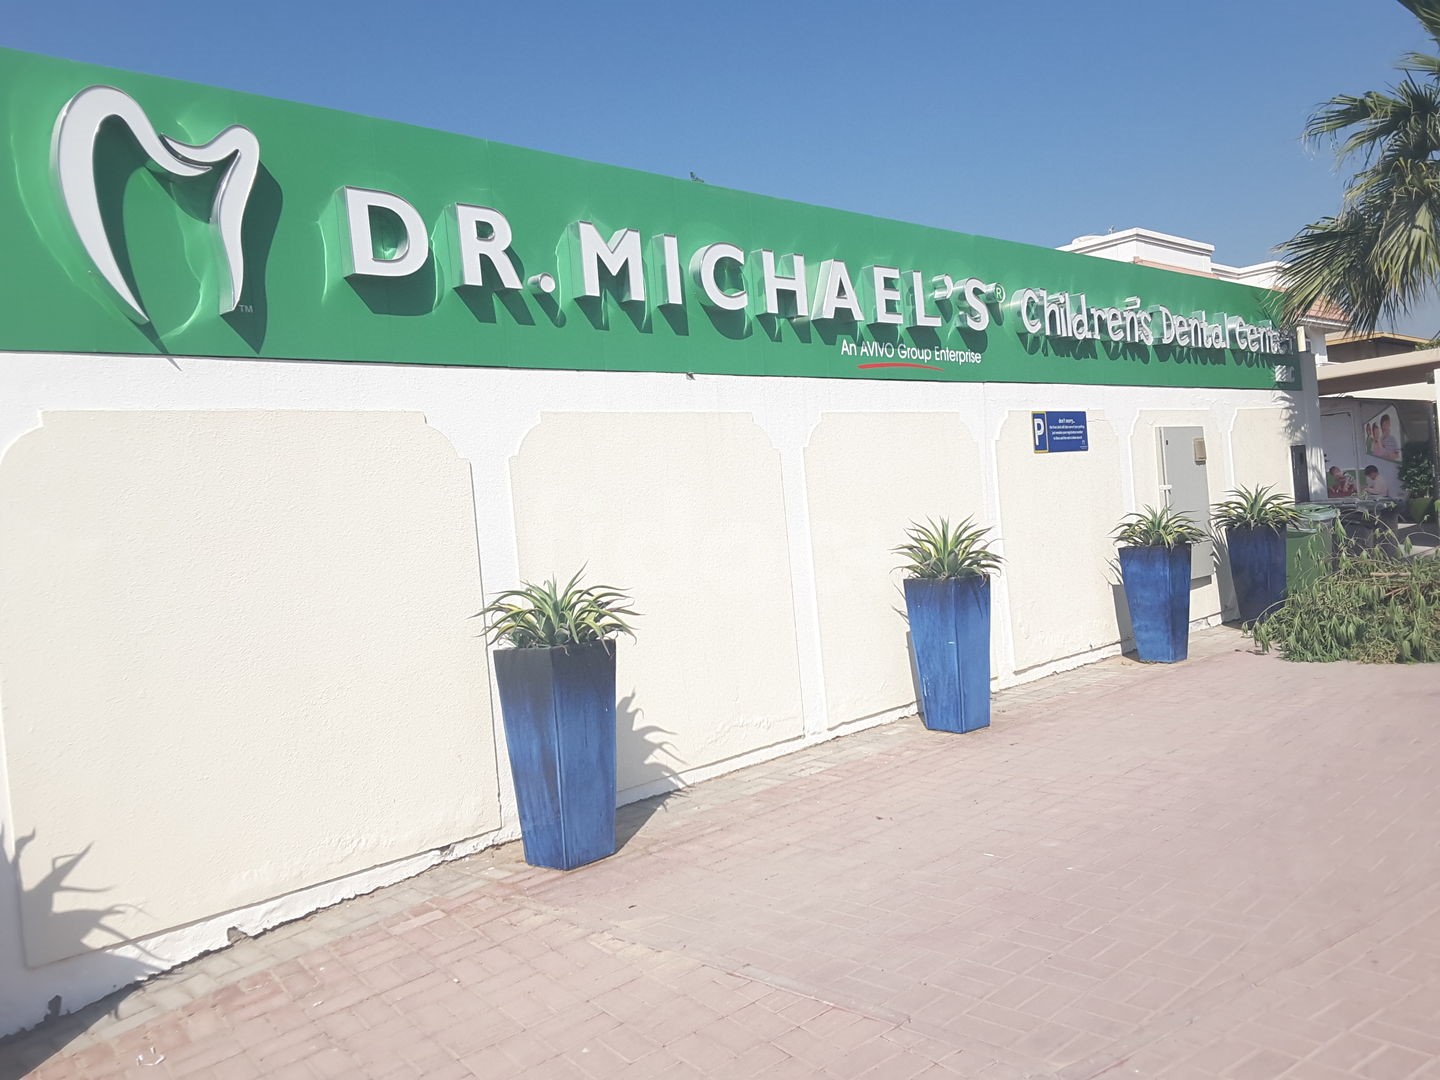 Dr. Michael's Children's Dental Center, Dubai